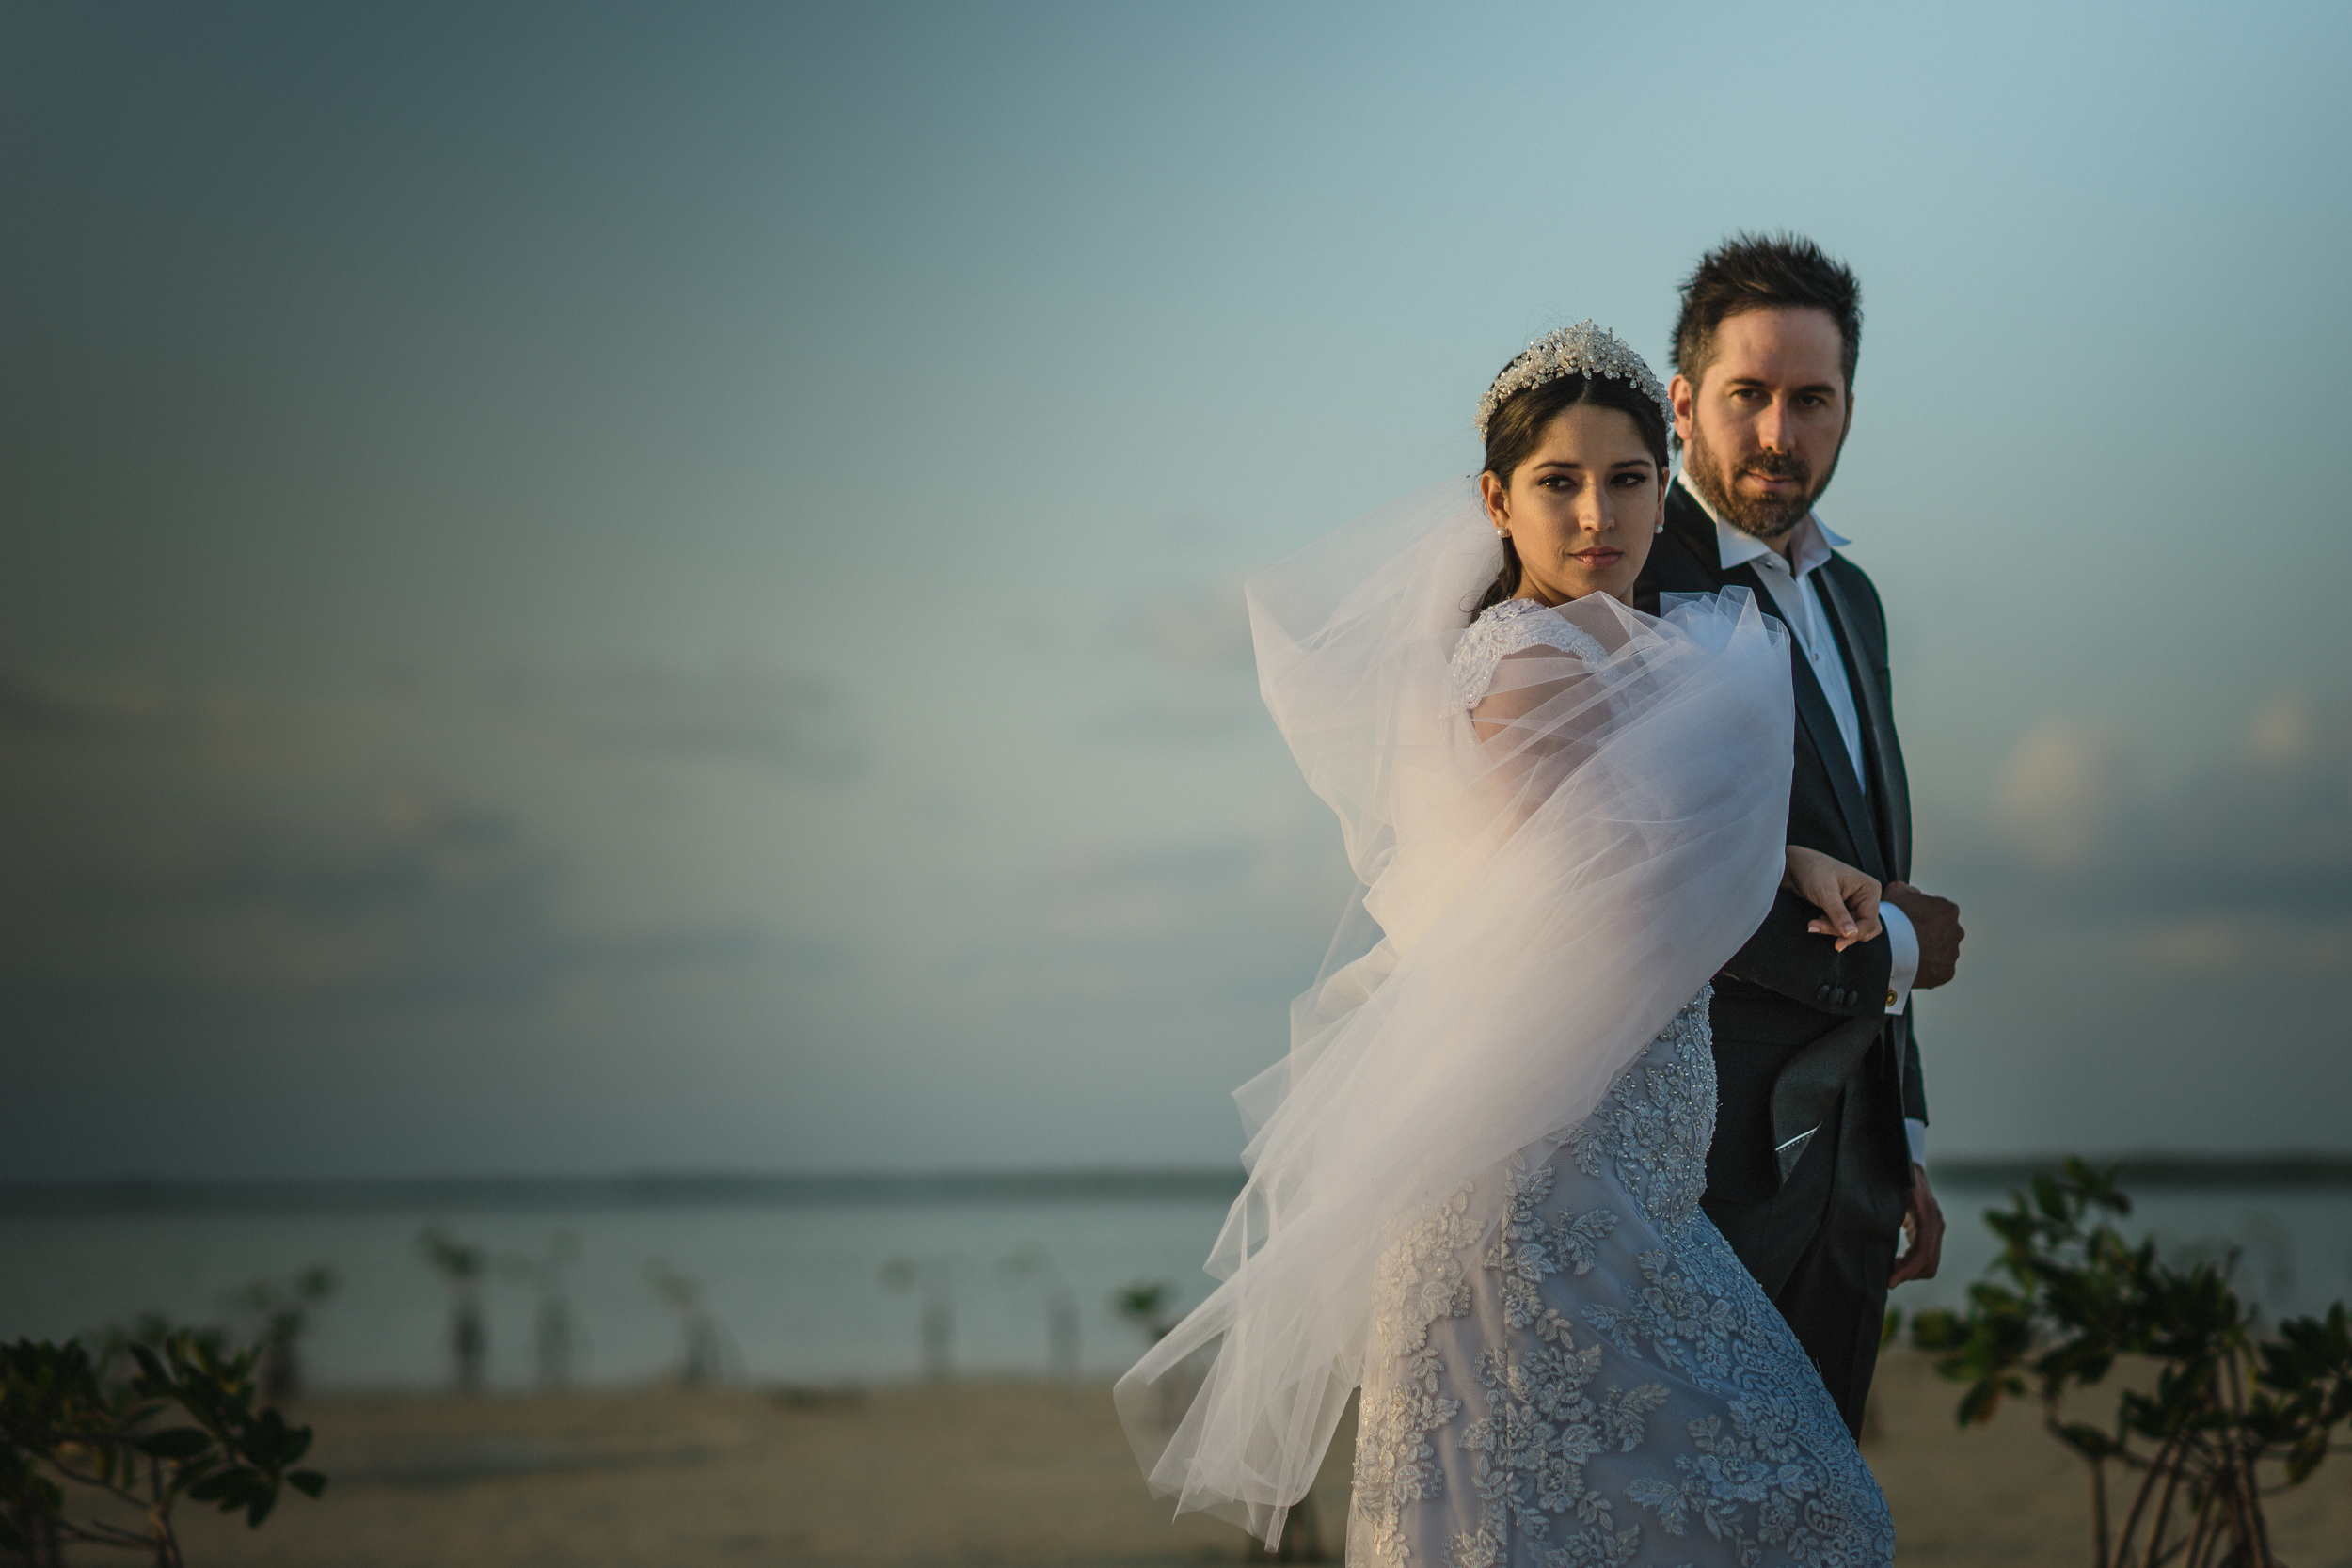 Mauriziosolisbroca-mexico-canada-wedding-photographer-pablo-hurtado-romina-prado-camila20160420DSC01025-2-Edit.jpg